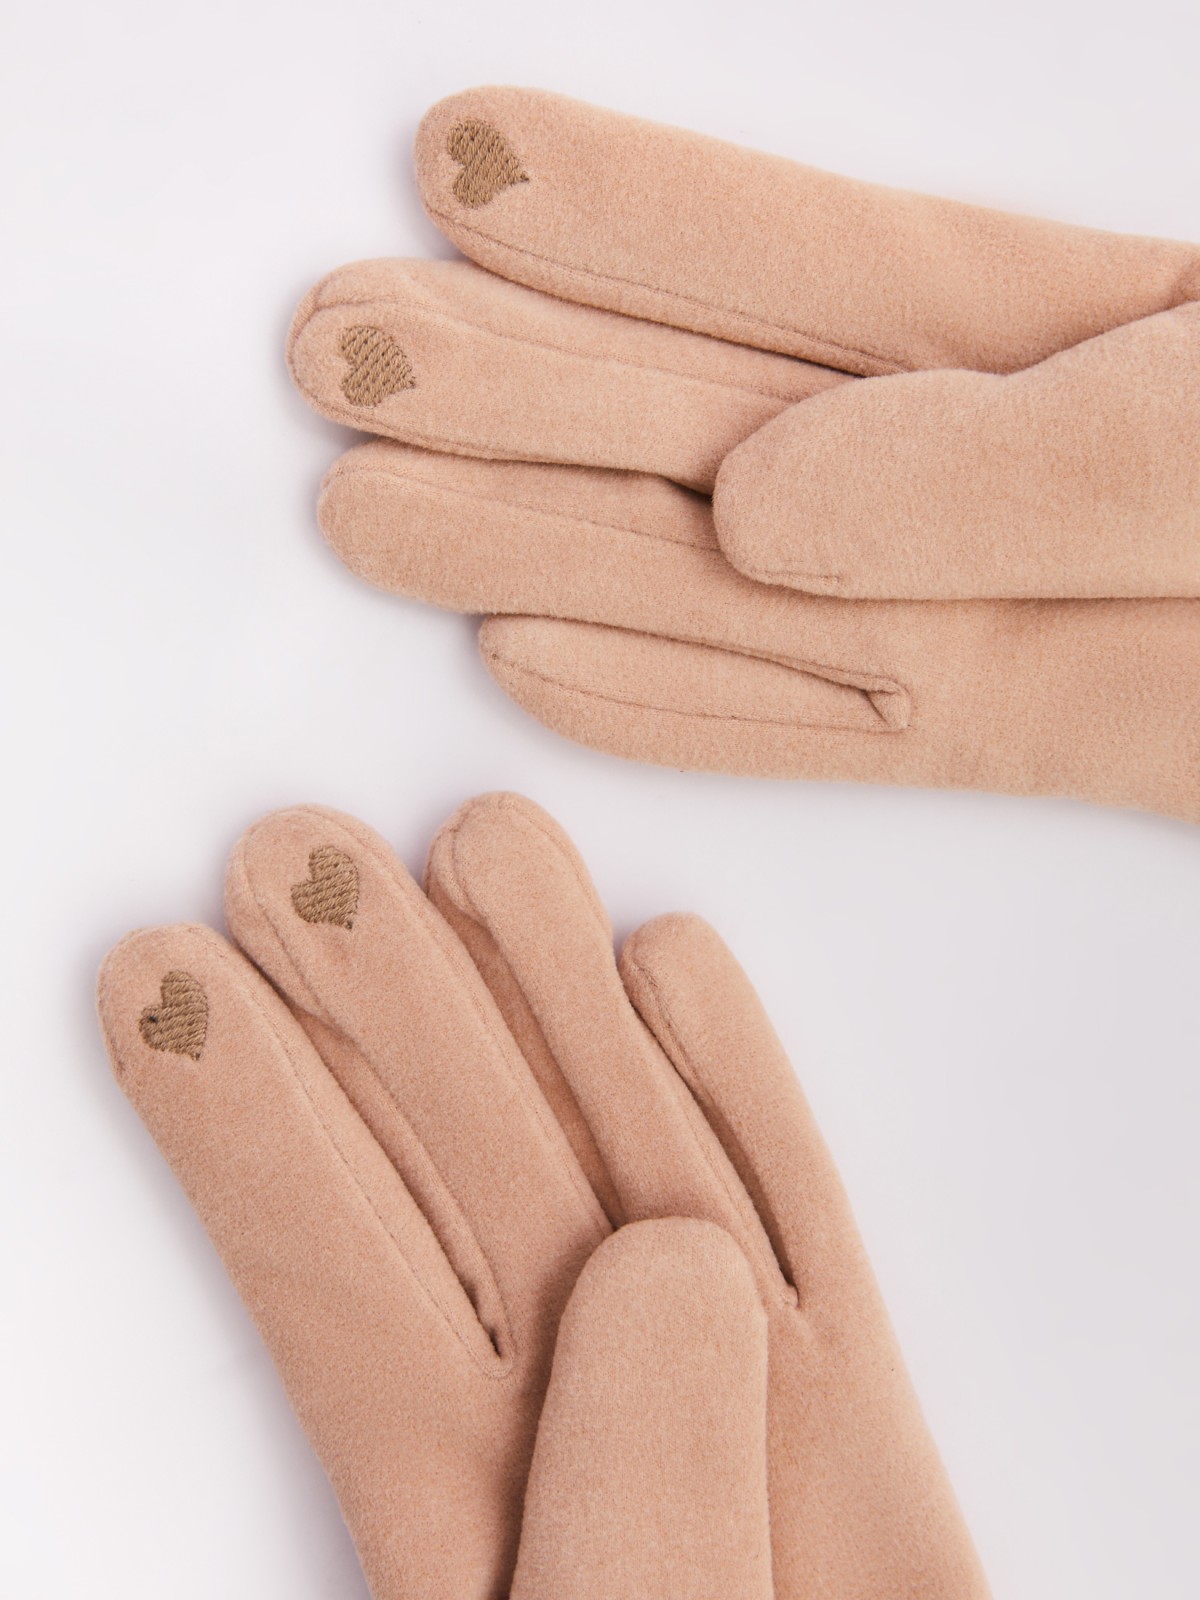 Тёплые перчатки с опушкой из экомеха и начёсом zolla 023429659025, цвет молоко, размер S - фото 3